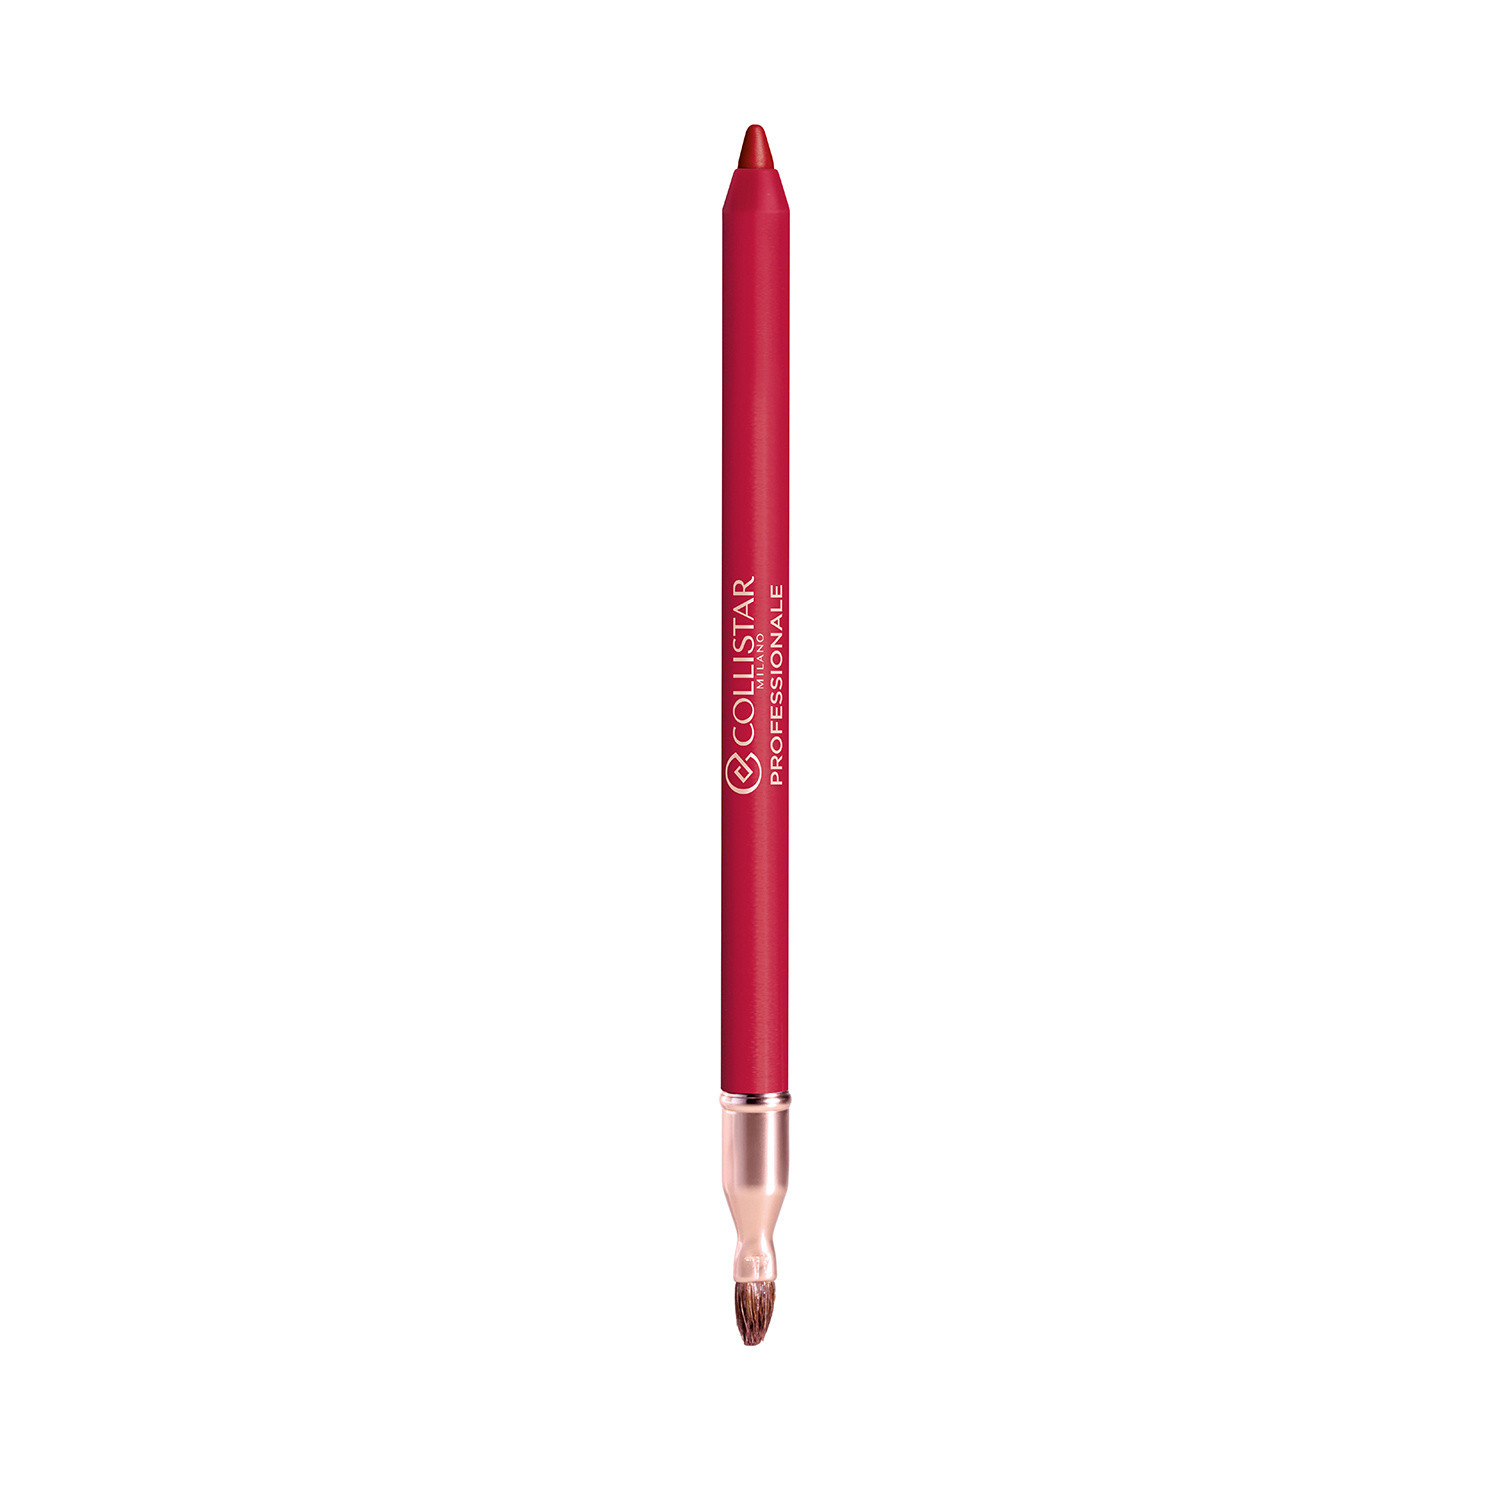 Collistar - Professionale matita labbra lunga durata - 111 Rosso Milano, Rosso fragola, large image number 1